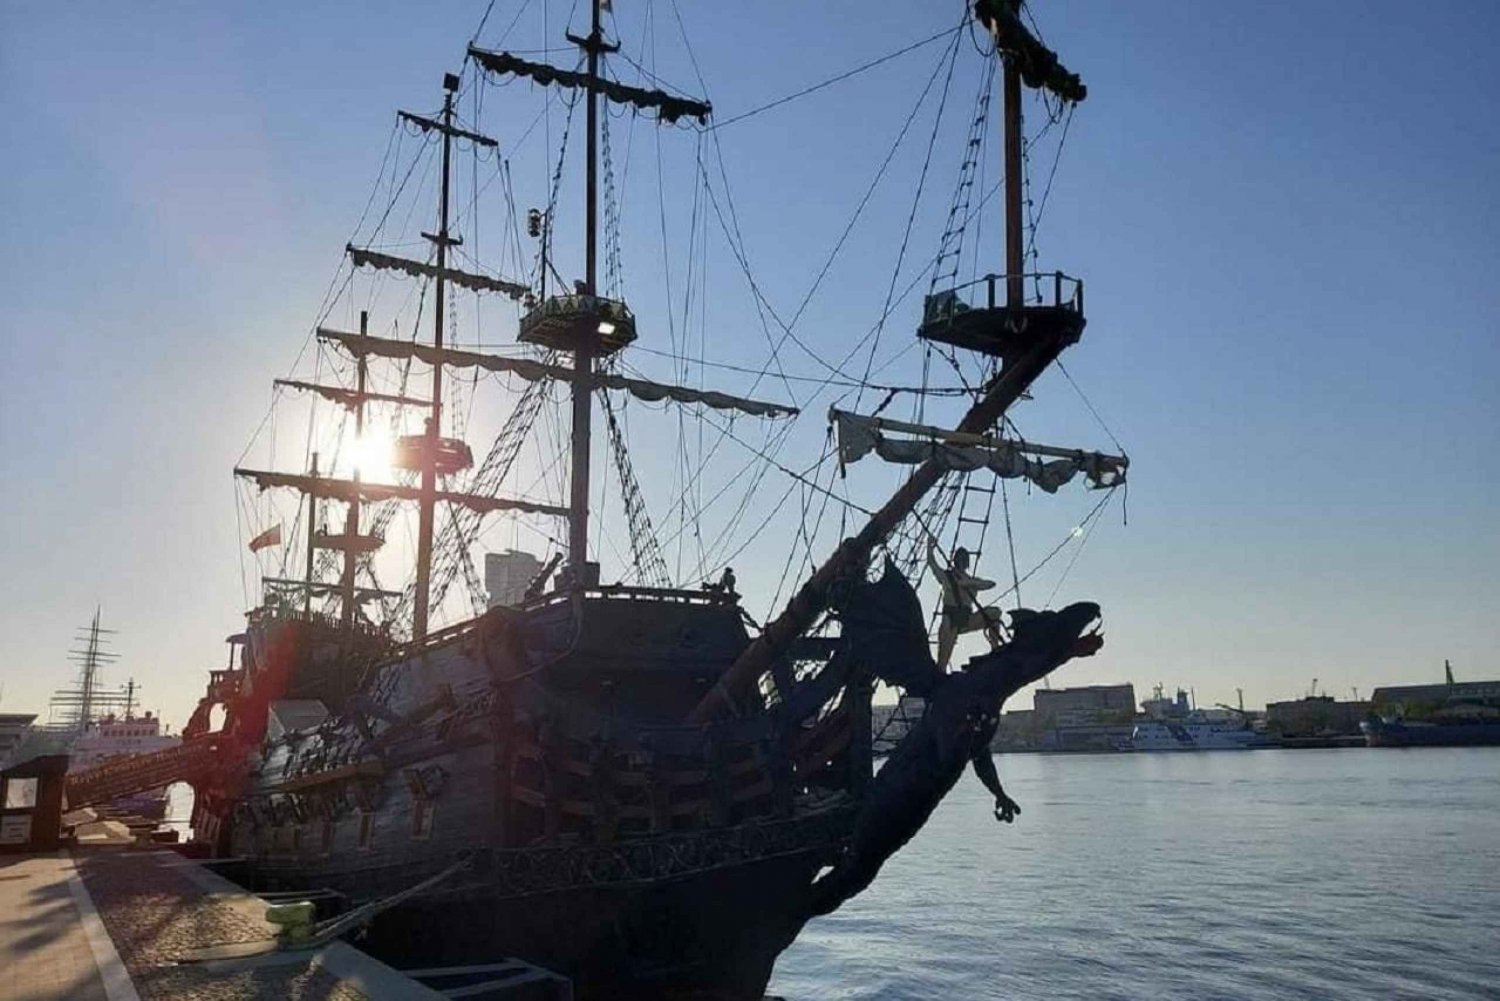 Gdynia: Gdynia Port Tour by Galleon Ship